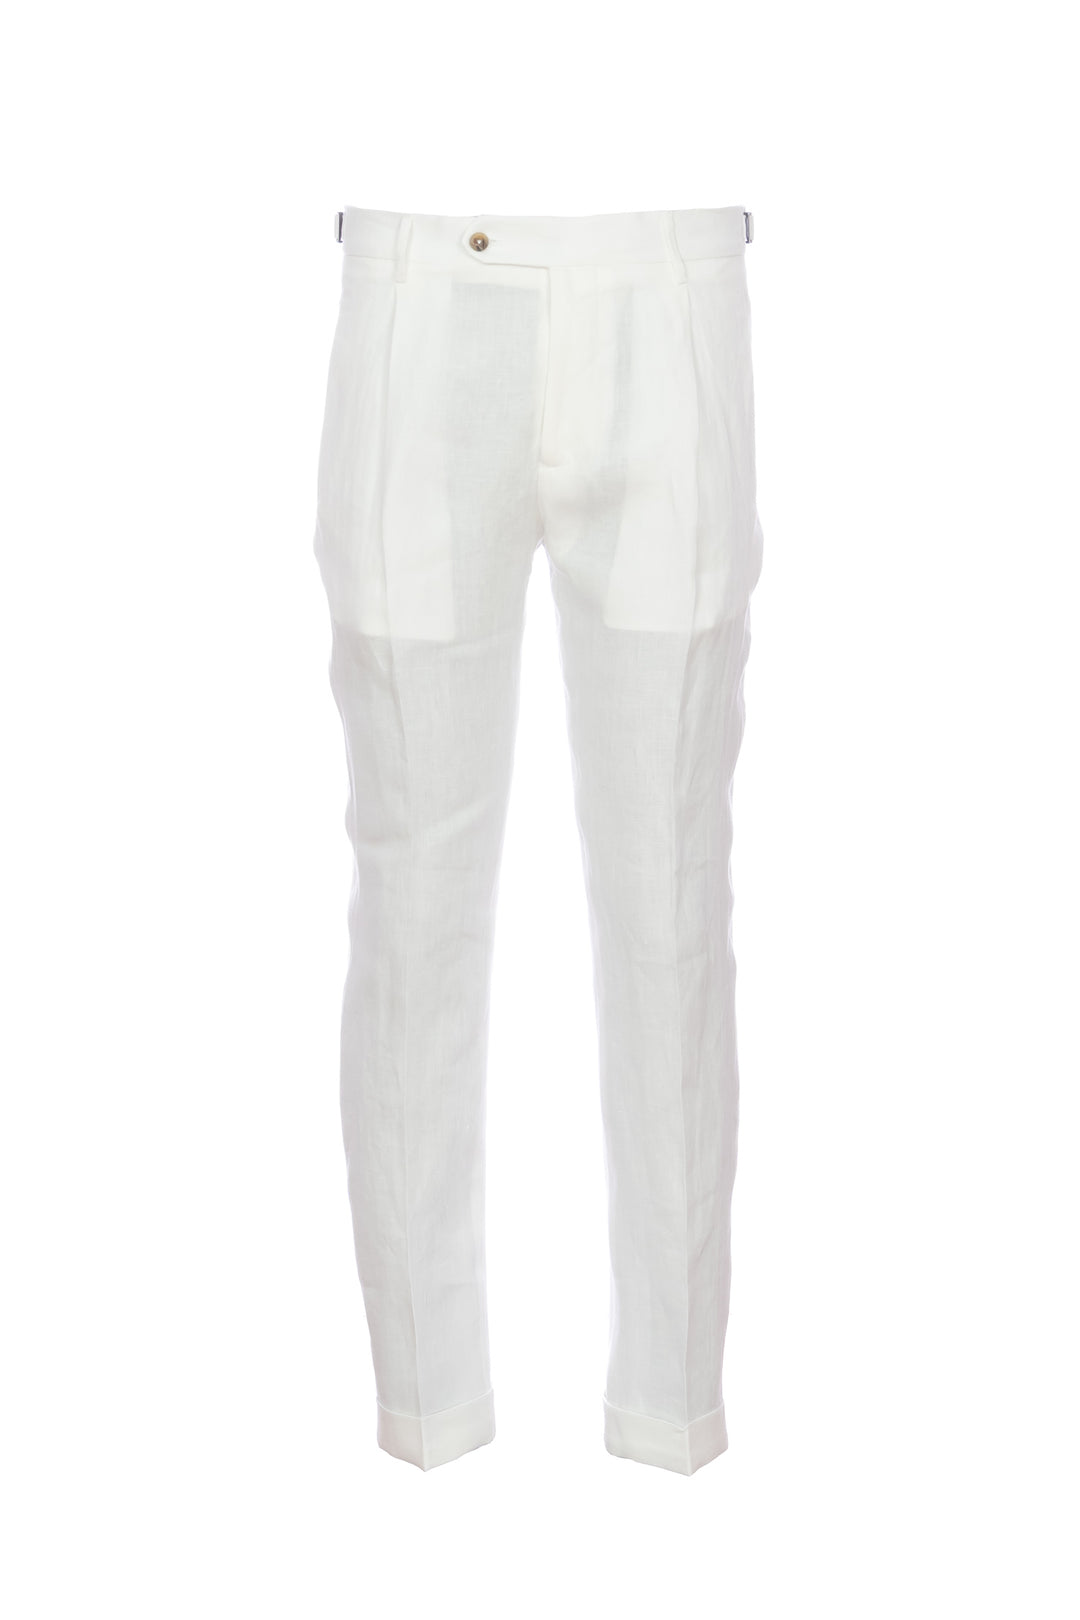 BERWICH Pantalone “RETRO” bianco in seta con una pince - Mancinelli 1954